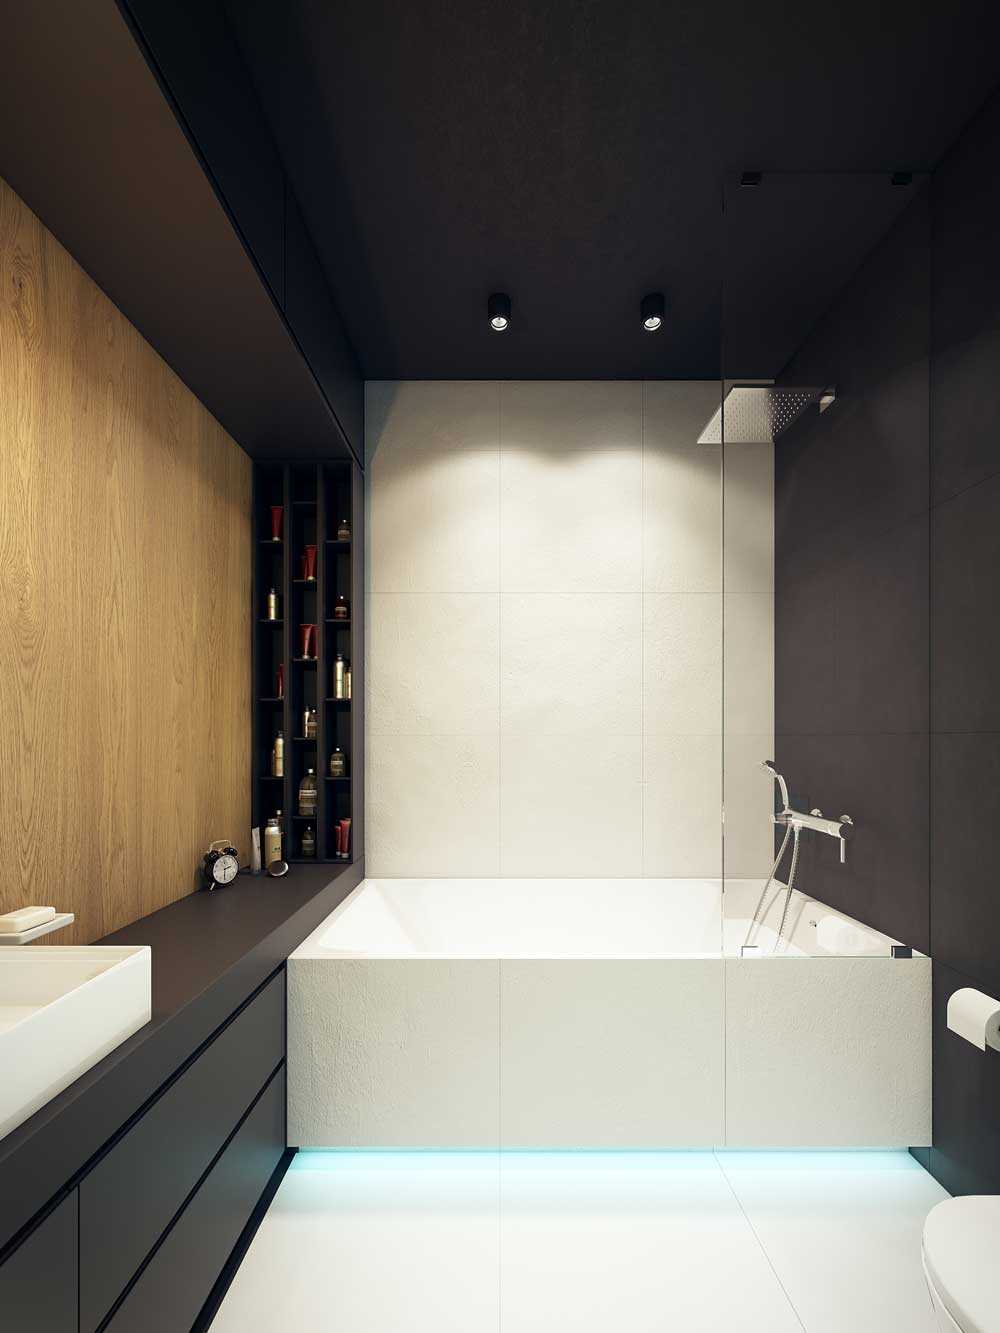 فكرة الداخلية غير عادية من الحمام من 6 متر مربع